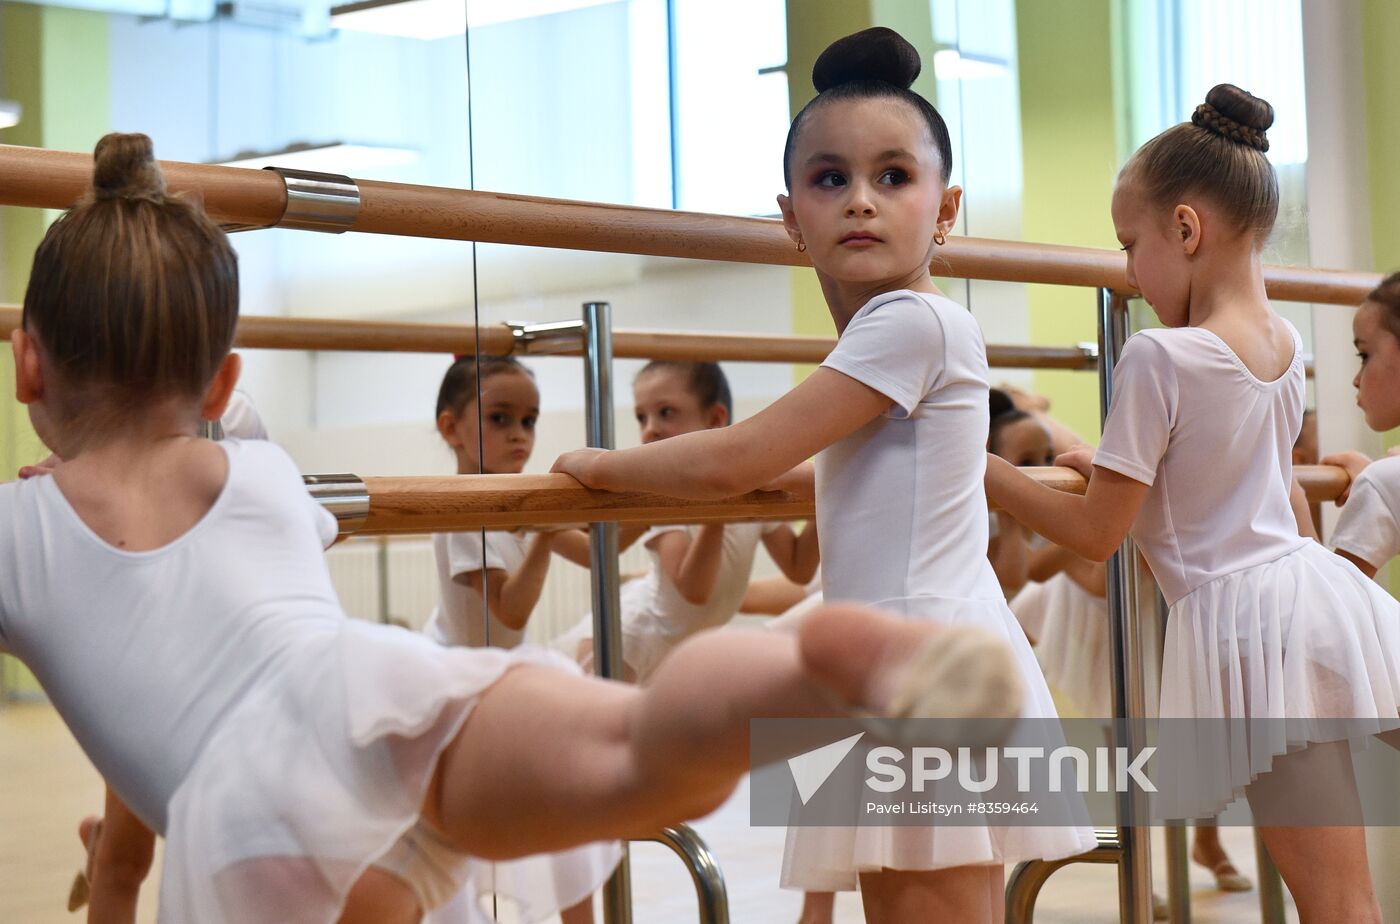 Russia Rhythmic Gymnastics Center